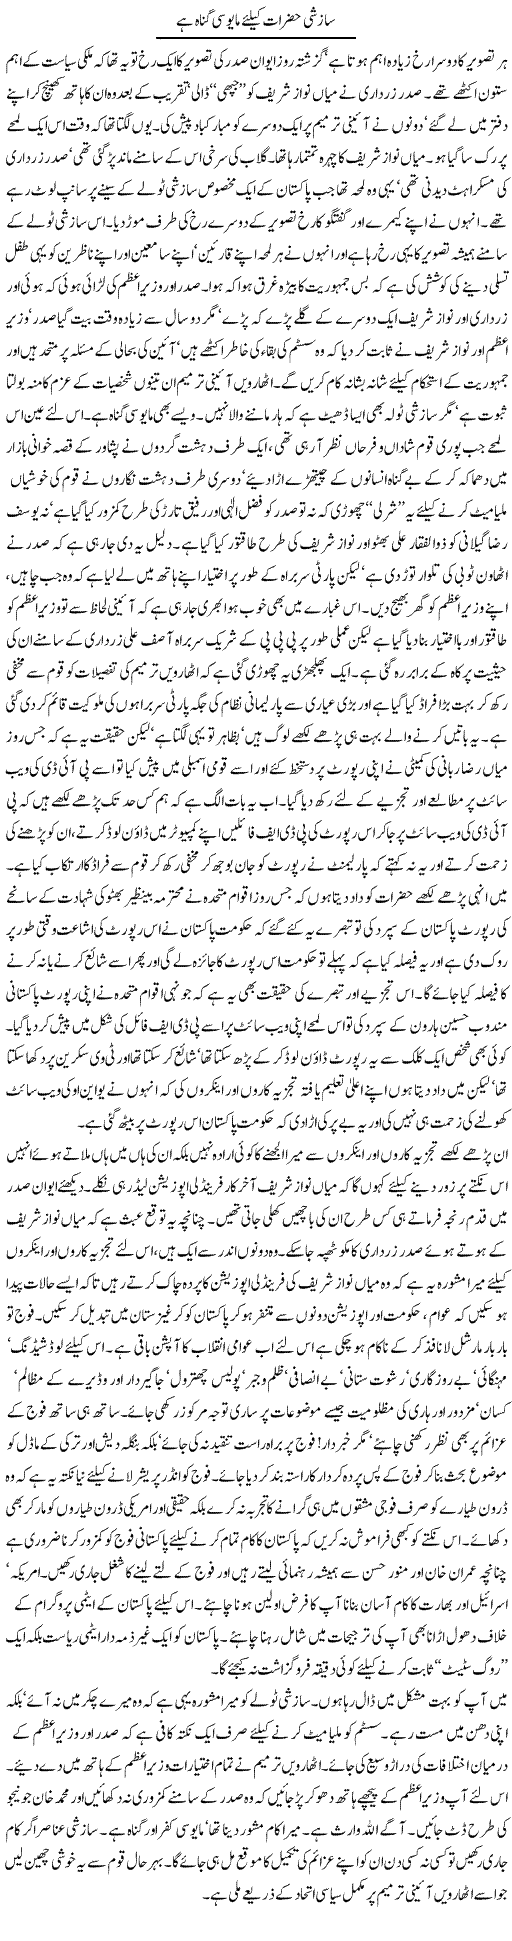 Sazshi Hazrat Express Column Asadullah Galib 21 April 2010